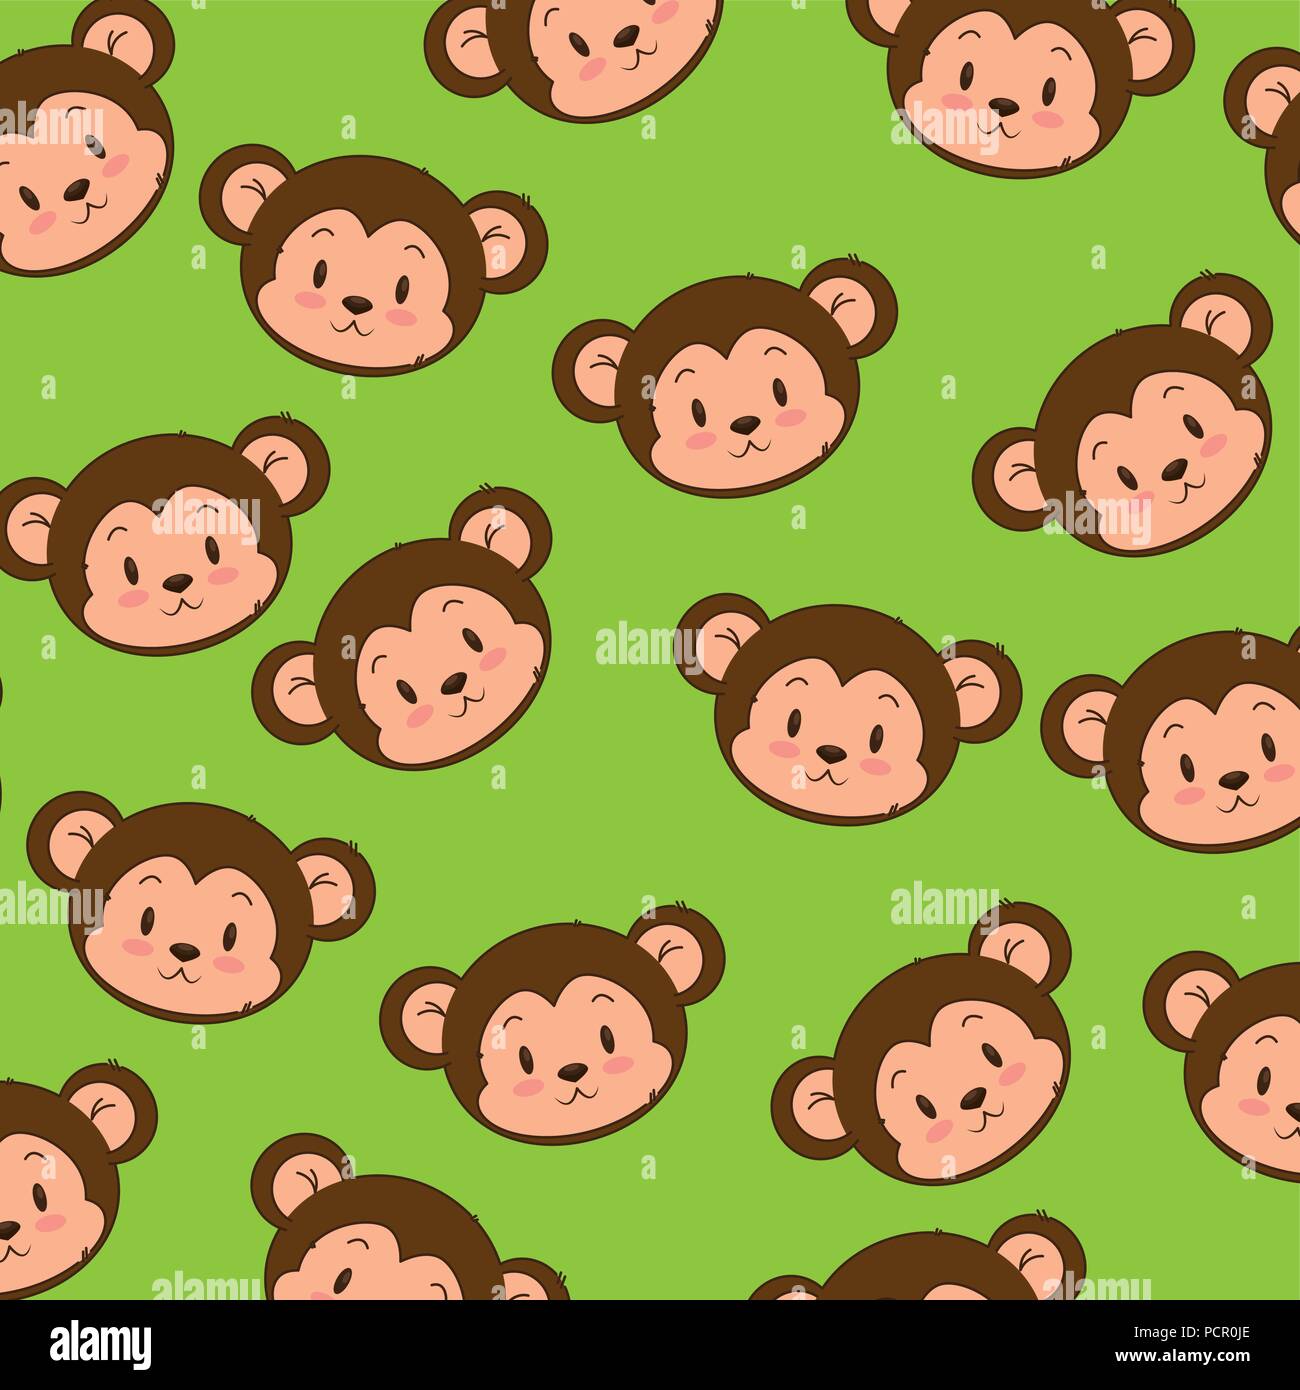 Hãy thưởng thức bức ảnh về họa tiết khỉ dễ thương này, bạn sẽ cảm nhận được sự dễ thương và tinh nghịch của những chú khỉ dễ thương. Họa tiết này khiến bạn nhớ đến bầu trời xanh và thiên nhiên tươi đẹp với những chú khỉ nhỏ.